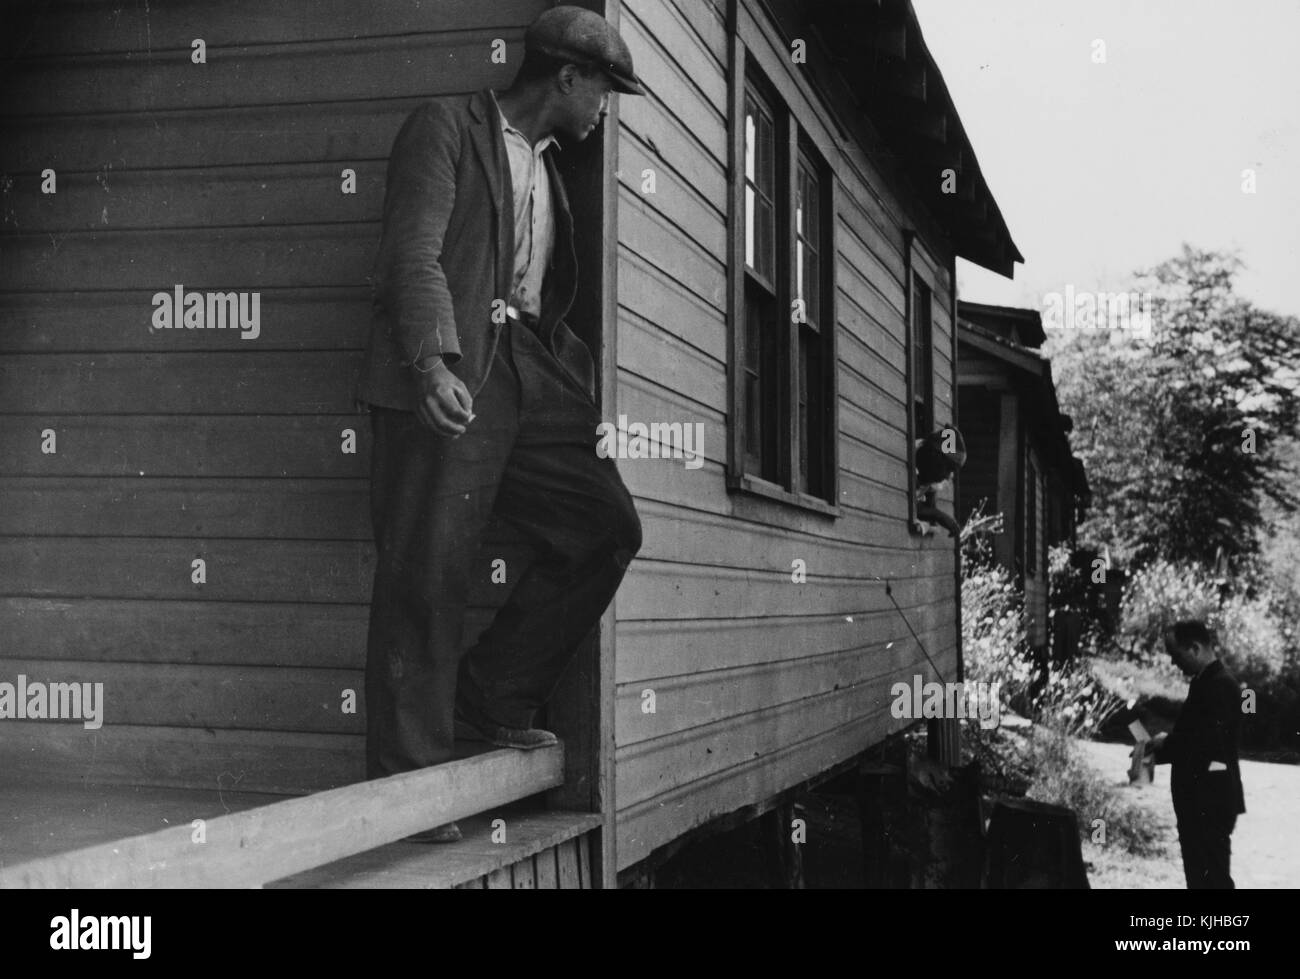 Ein Foto von einem Mitarbeiter der Farm Security Administration mit einem Überdruckventil prüfen, ein Landwirt, der Fsa relief Kontrollen vorgesehen waren, das Leben und die Höfe der Bauern um das Land zu verbessern, eine Frau dem Mann durch ein offenes Fenster ihres Holz spricht, ein Mann steht auf der Veranda eine Zigarette, während ihre Interaktion beobachten, Scott, West Virginia, 1935. Von der New York Public Library. Stockfoto